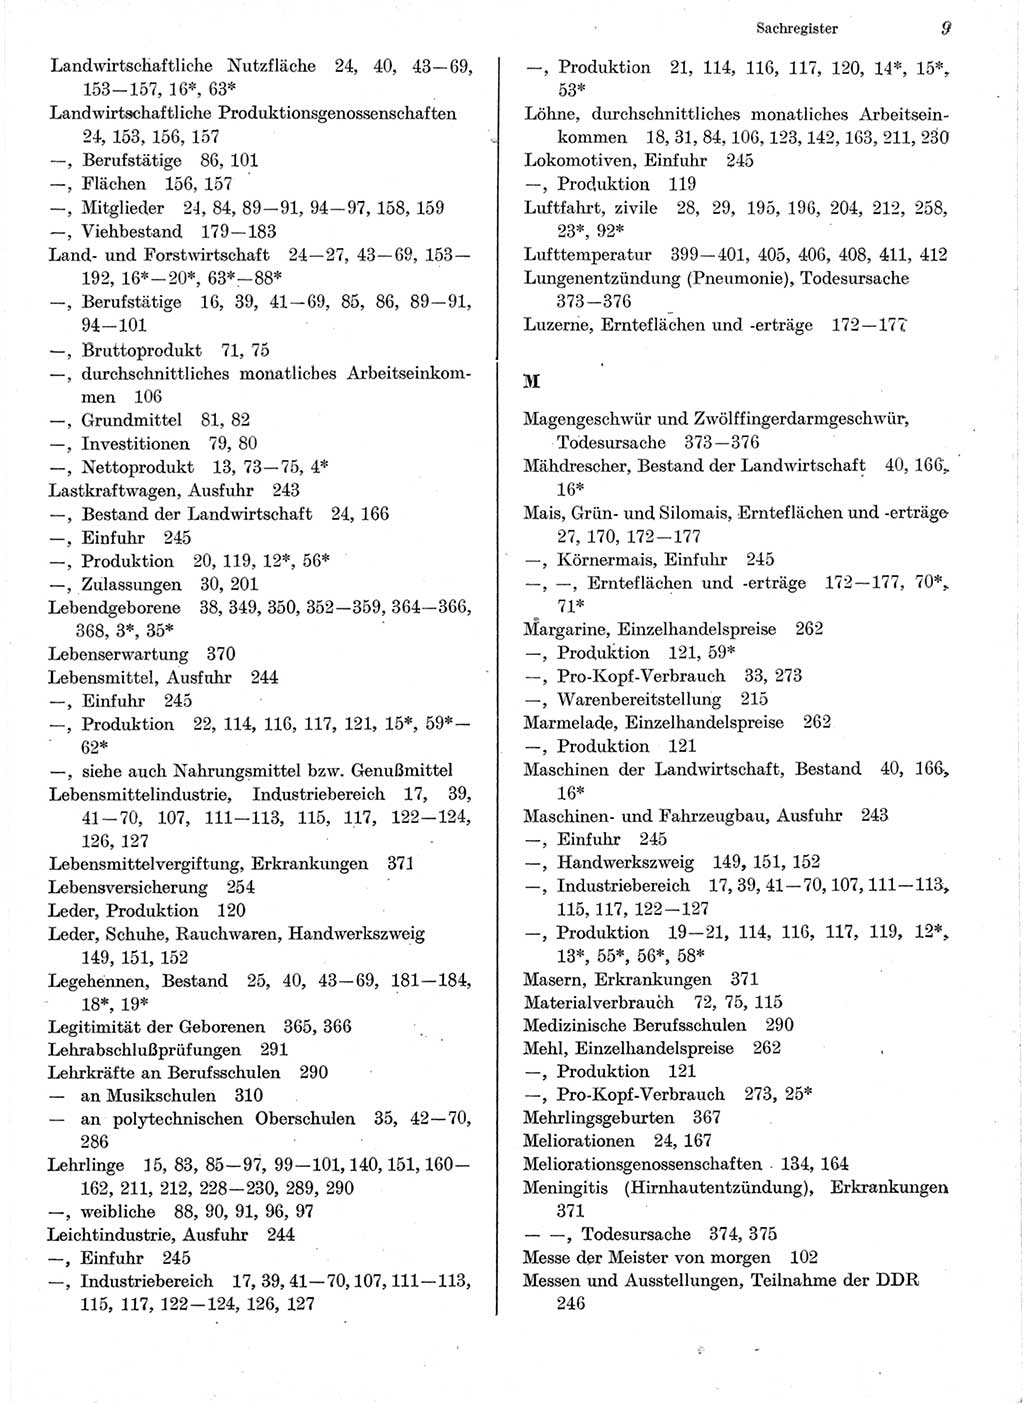 Statistisches Jahrbuch der Deutschen Demokratischen Republik (DDR) 1978, Seite 9 (Stat. Jb. DDR 1978, S. 9)